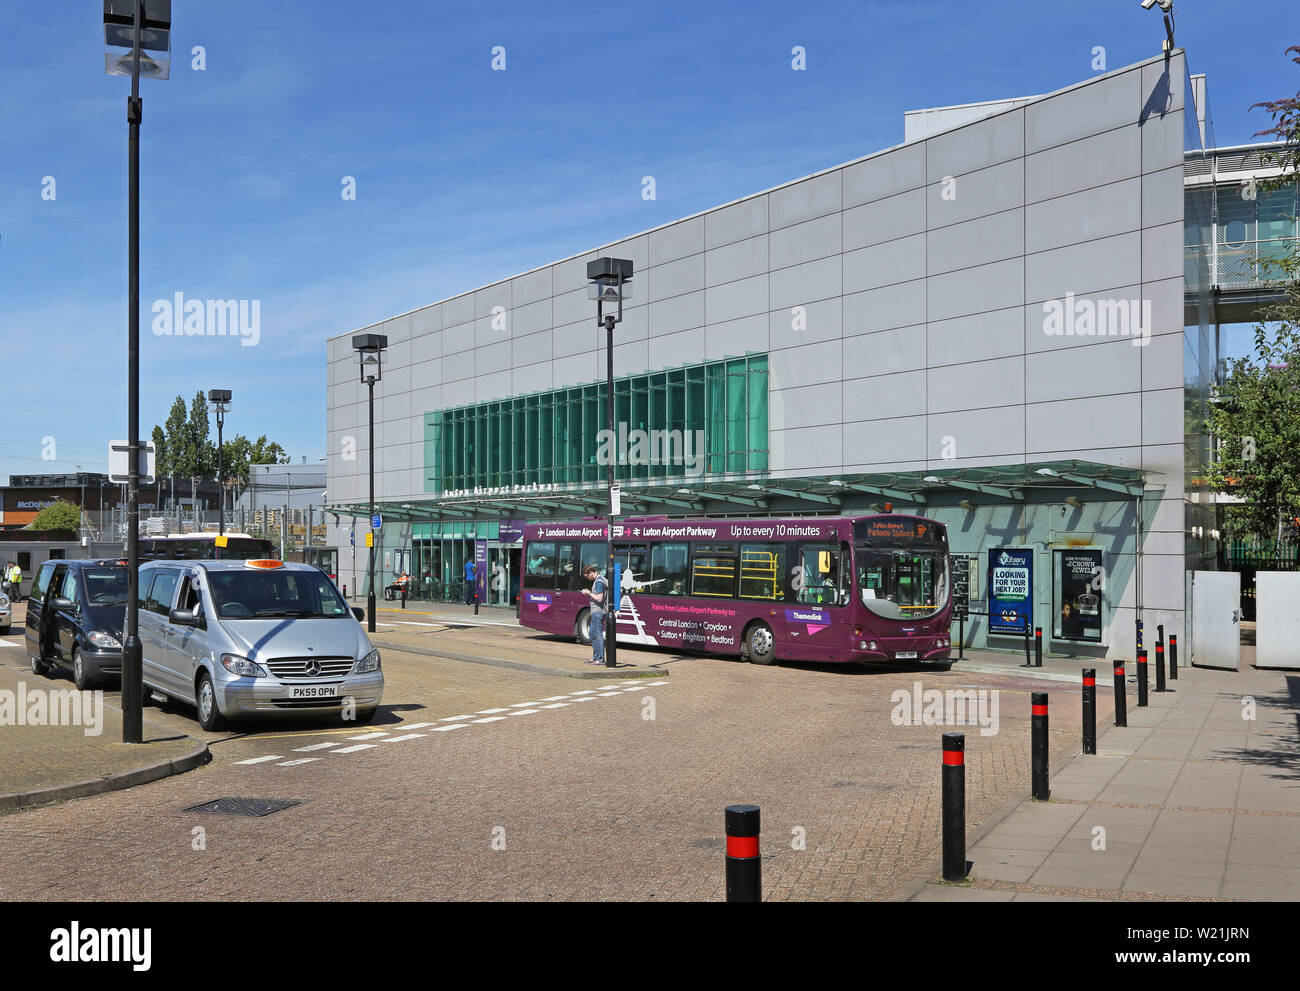 Luton Airport, London. Passagiere am Bahnhof Luton Airport Parkway warten auf den Shuttlebus zum Flughafen Terminal. Neue DART-Bahn Link öffnet in 2021. Stockfoto